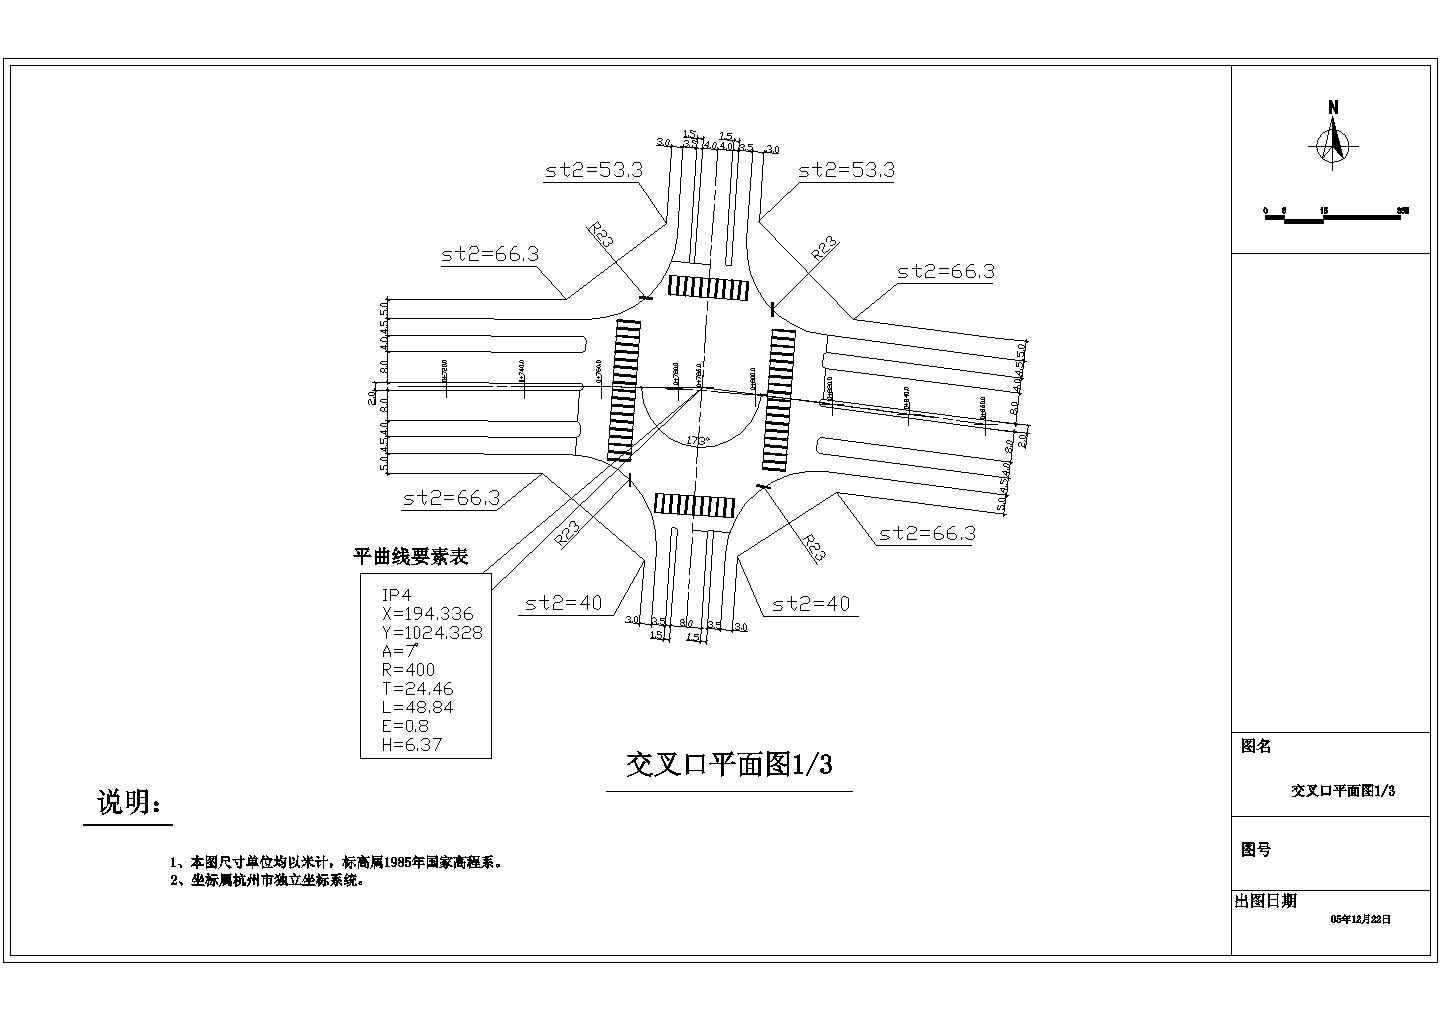 湛江市城市管理和综合执法局网站-“三帆路口”改造方案民意调查